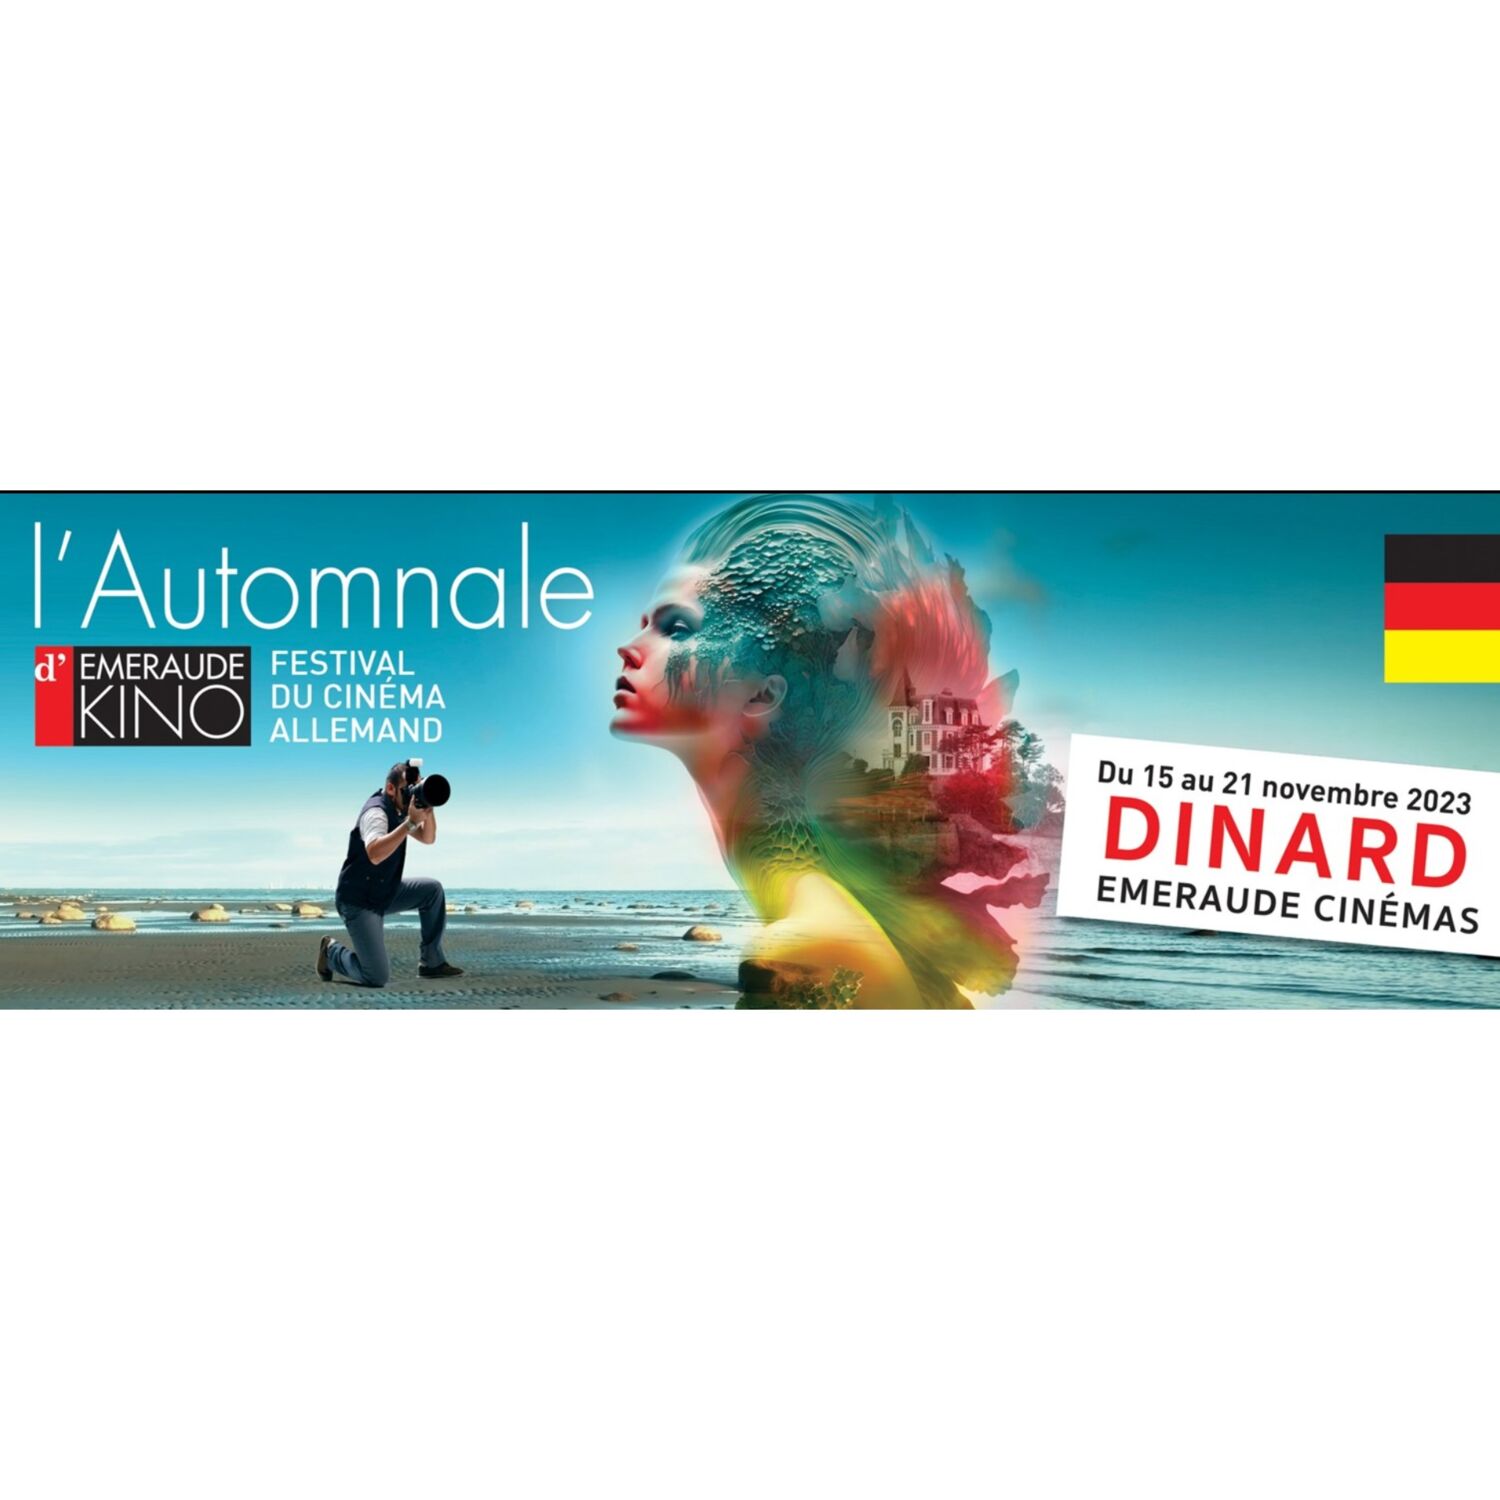 Le cinéma Allemand à l'honneur jusqu'au 21 novembre à Dinard